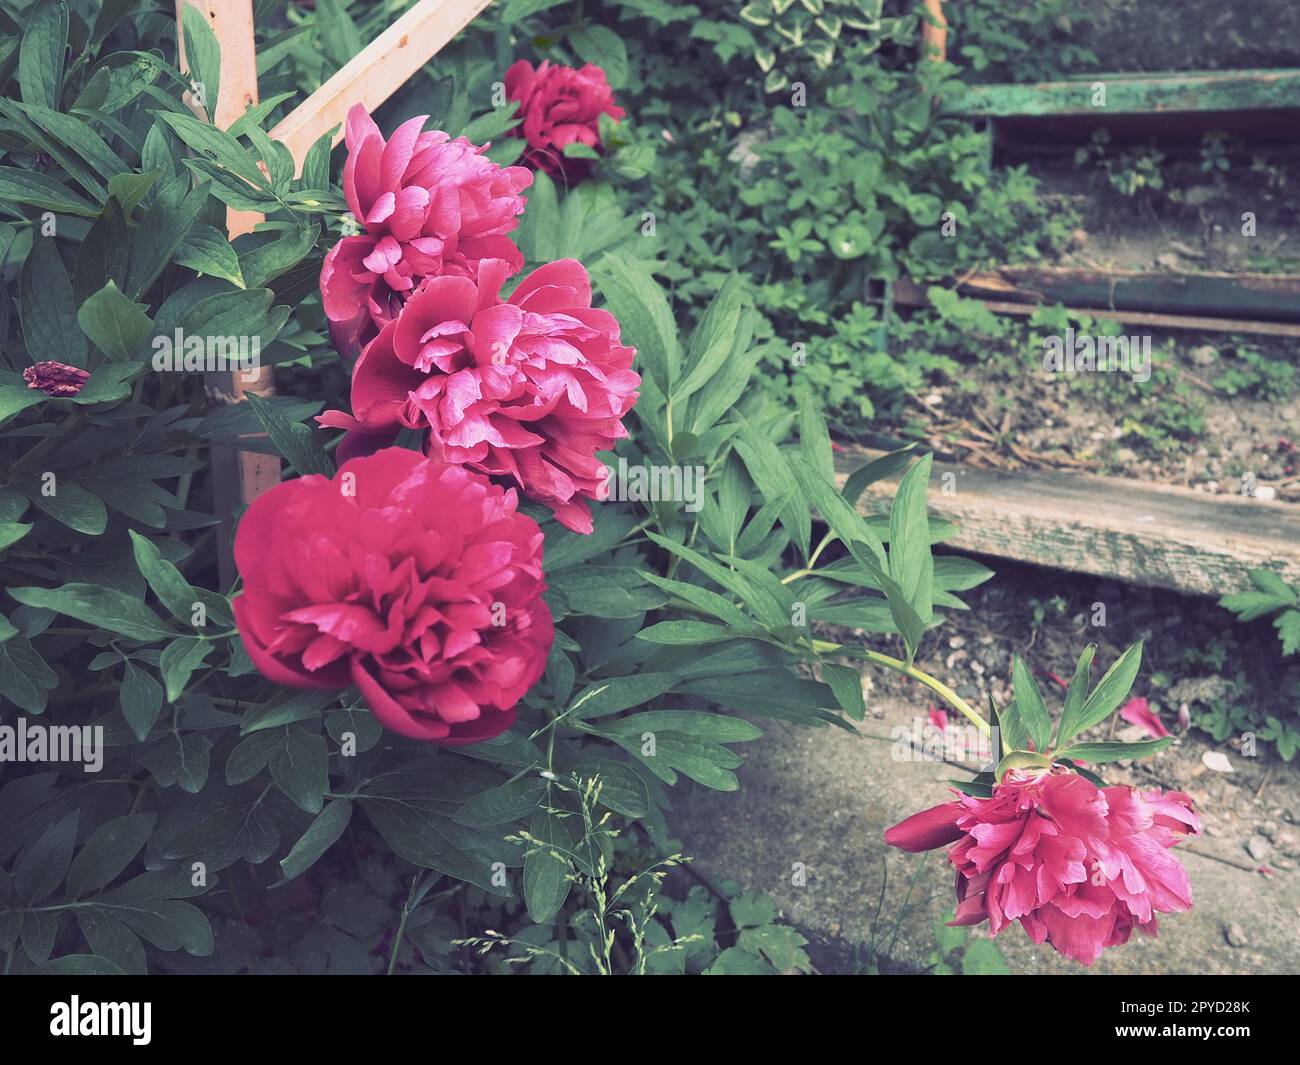 Rot-rosa Pfingstrosen. Wunderschöne große Pfingstrosen vor grünem Laub und Gras. Floristik, Blumenzucht und Gartenarbeit als Hobby. Holztreppe im Hintergrund Stockfoto